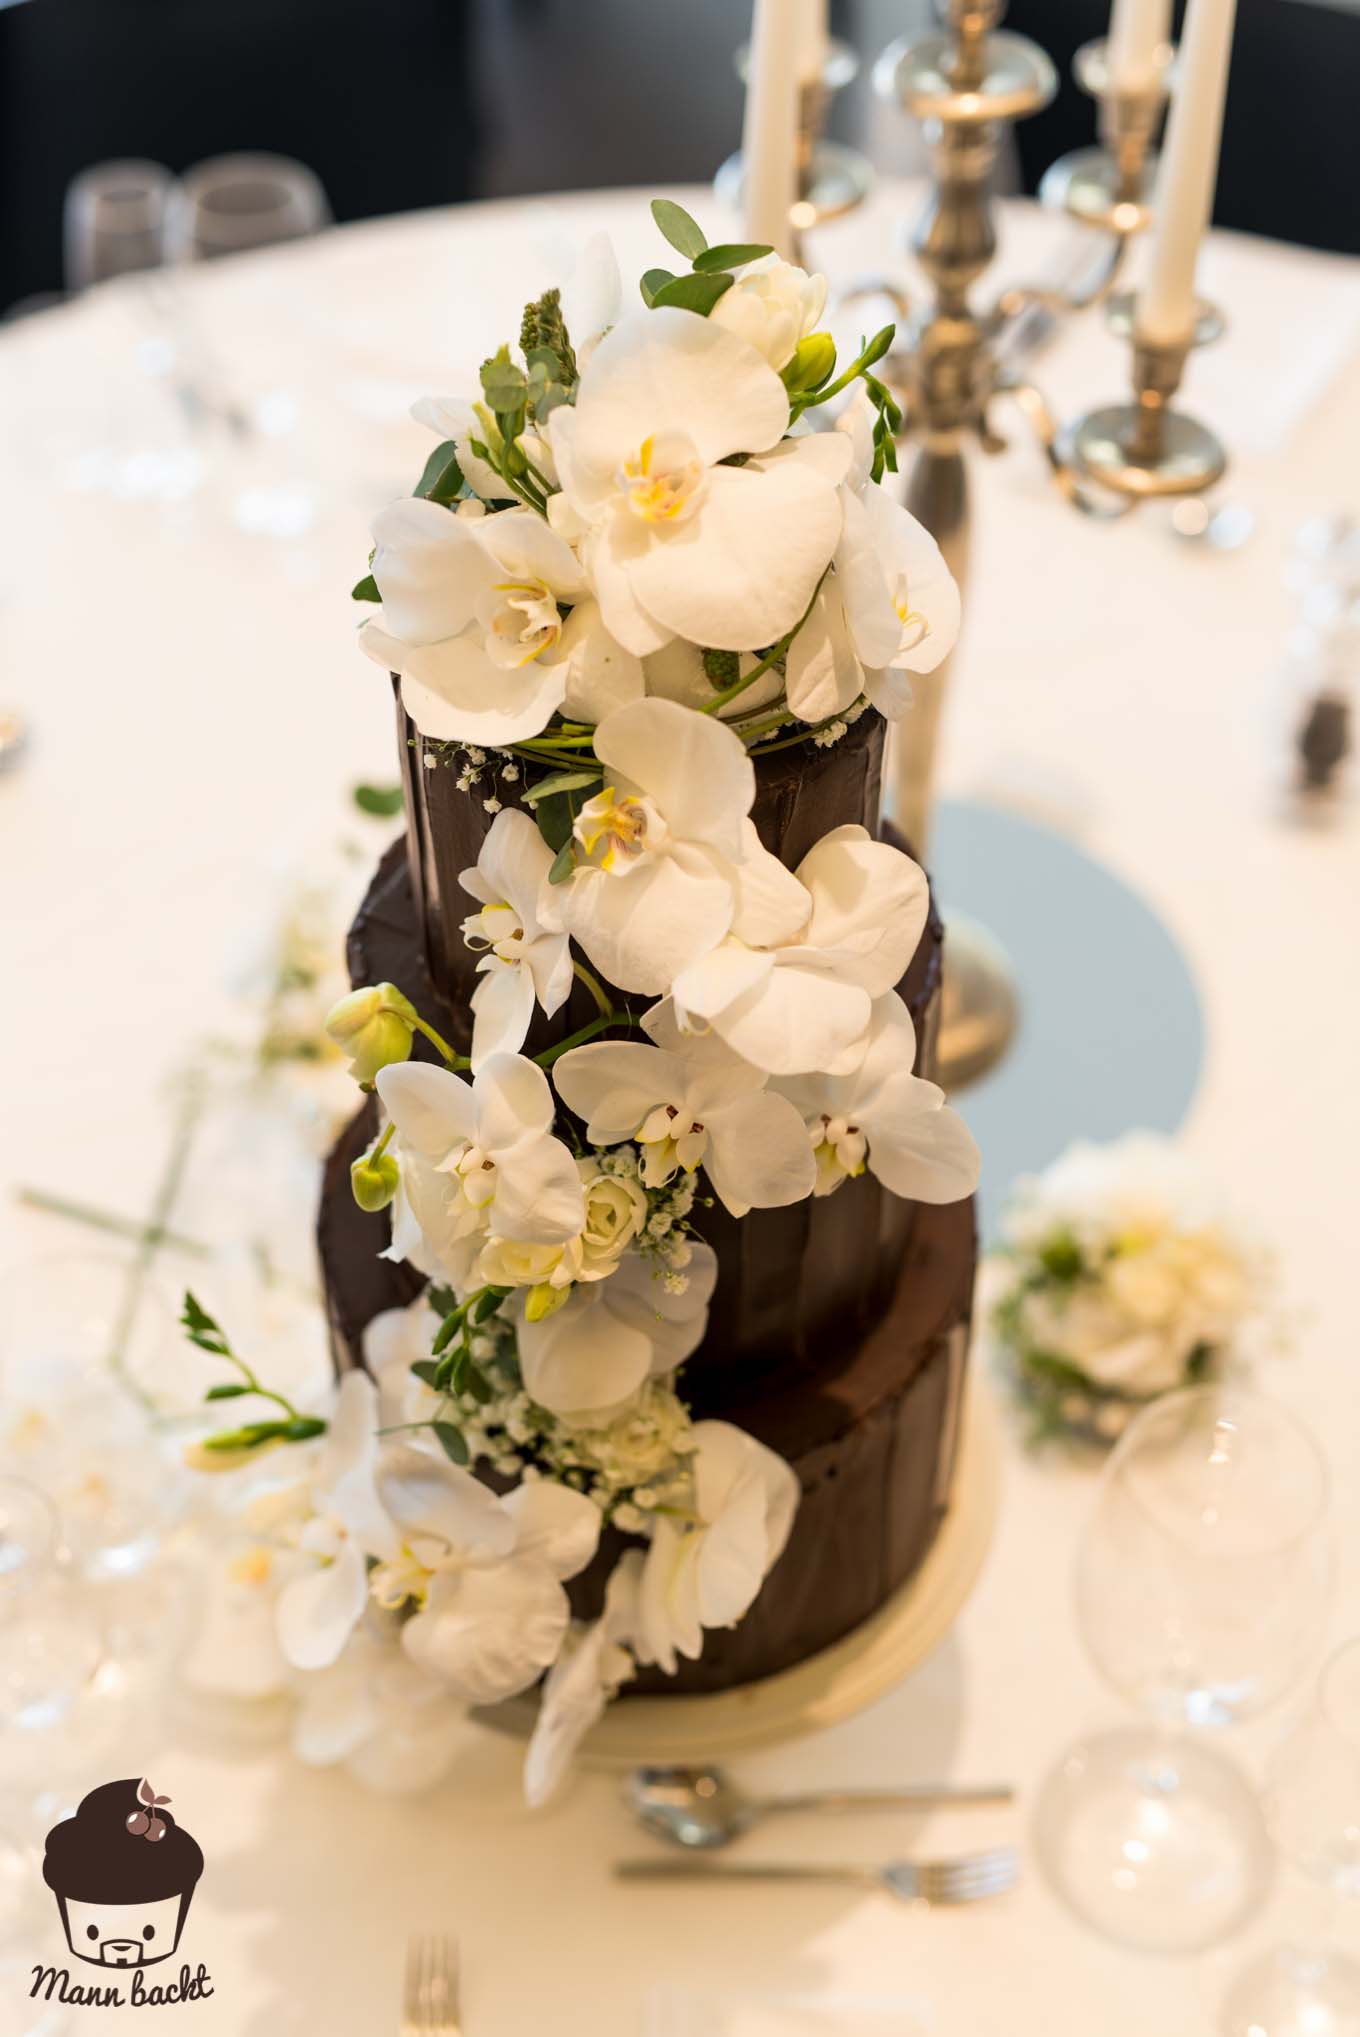 Mann backt Hochzeitstorte mit Orchideen Wedding Cake Orchids (5 von 7)